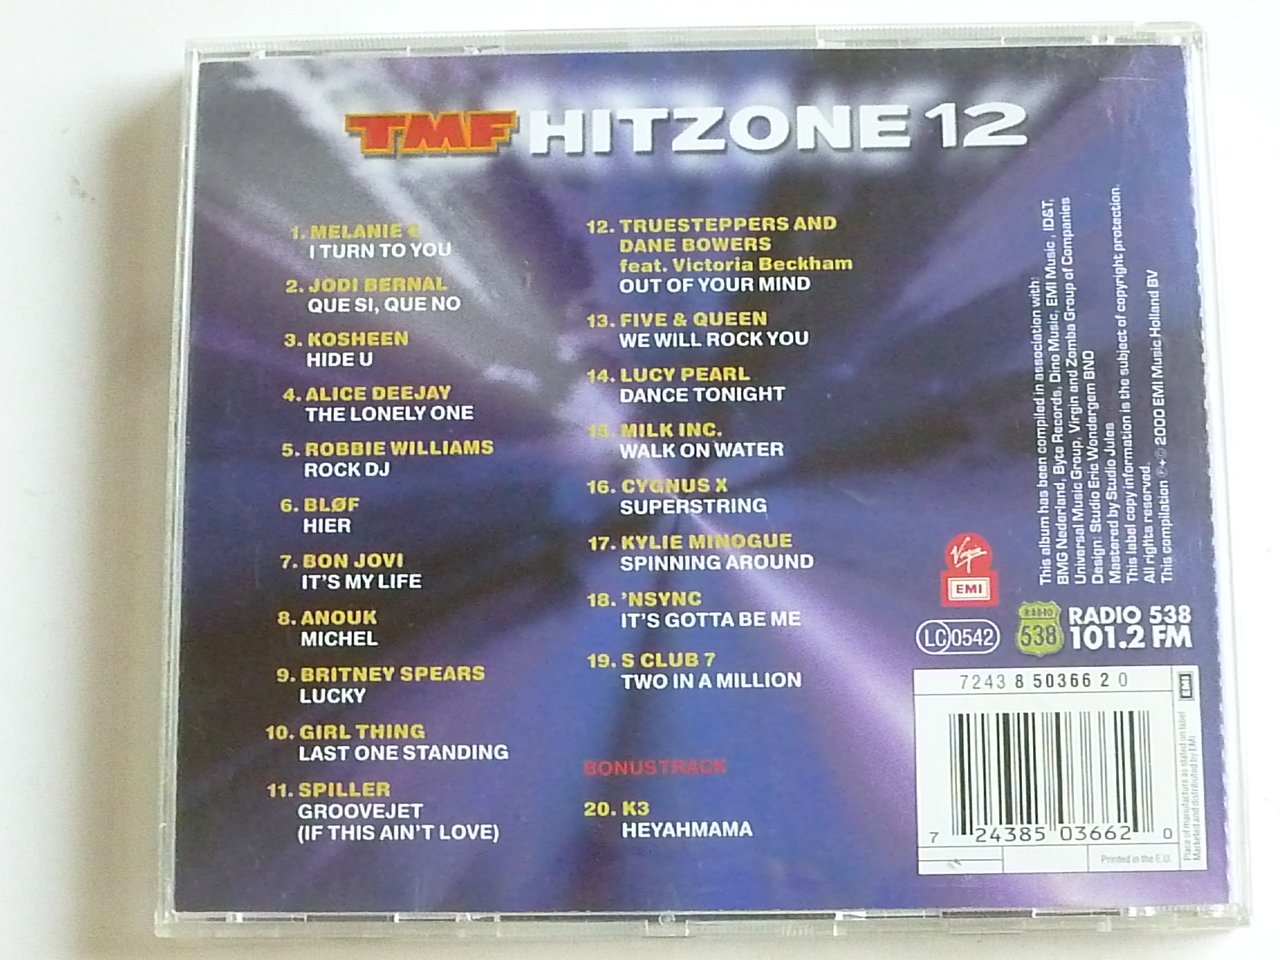 hoekpunt verkorten cafetaria Hitzone 12 - Tweedehands CD